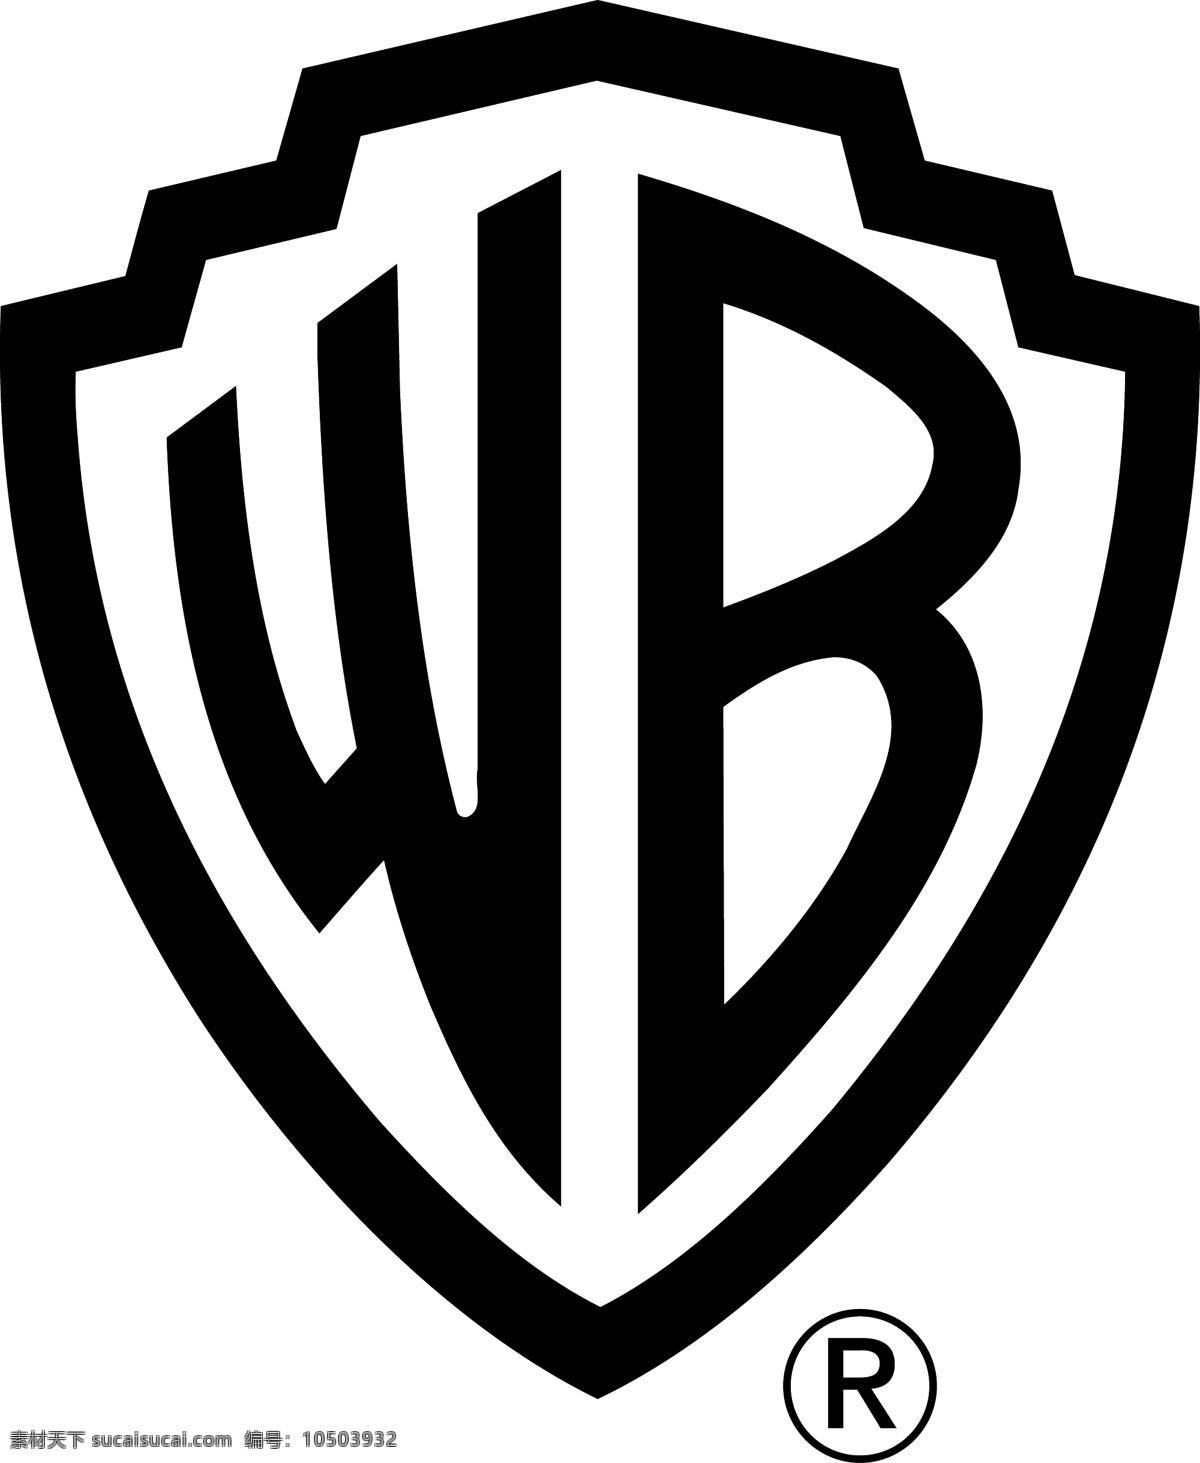 华纳 华纳兄弟 兄弟 兄弟的标志 标志 公司 矢量 logo 音乐 帕克兄弟标志 黑色